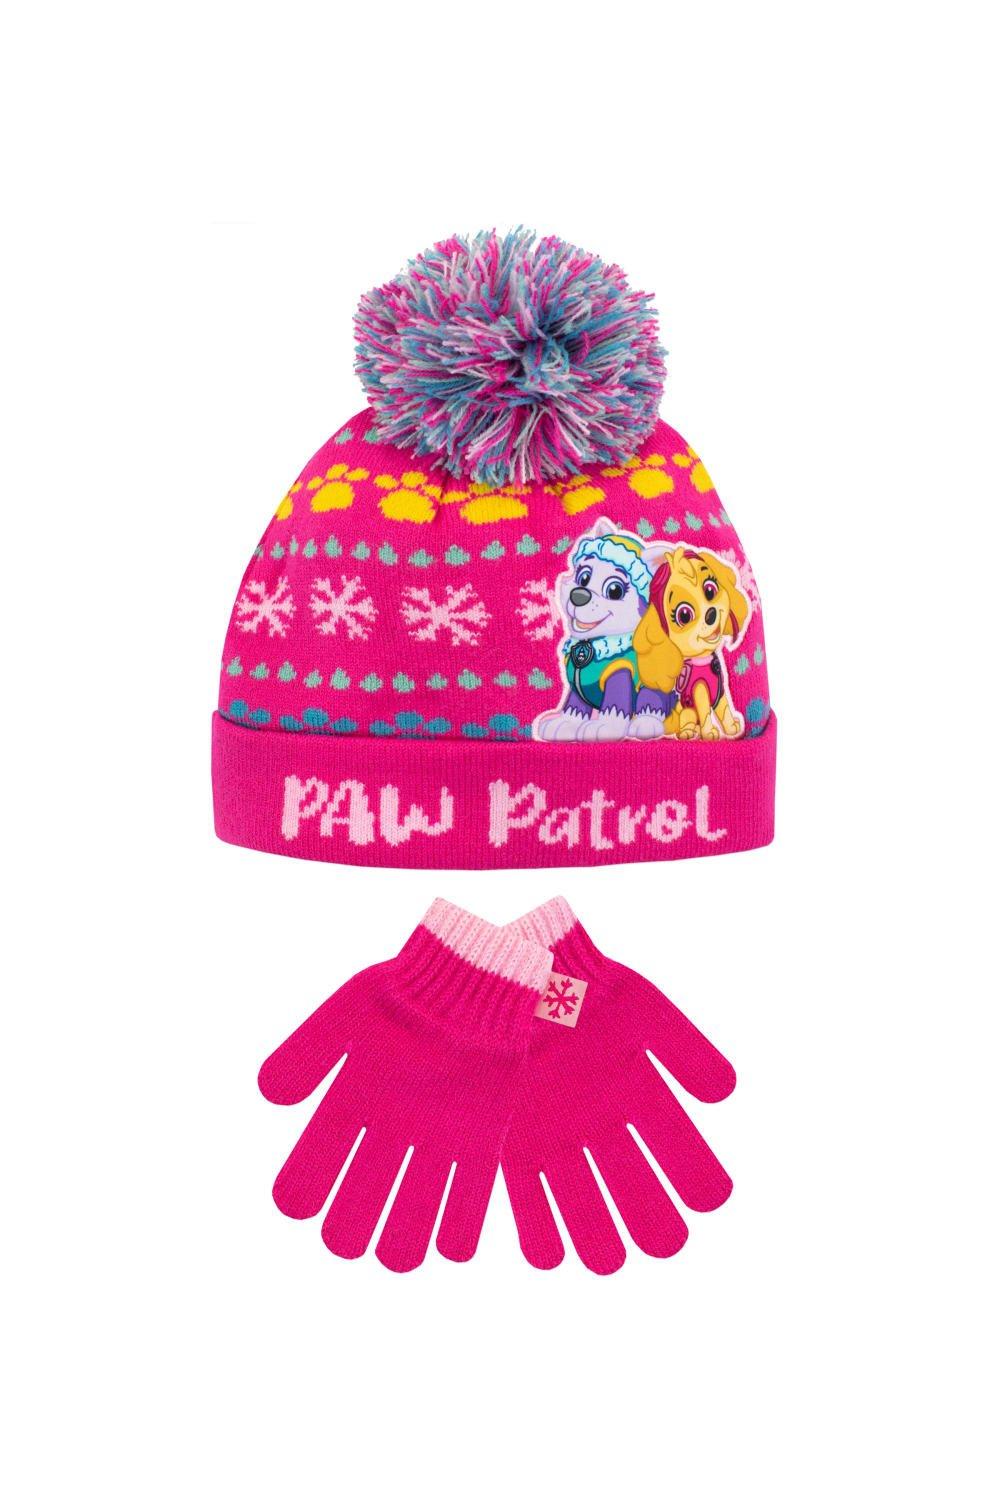 Детский комплект шапки и перчаток Paw Patrol, розовый шапка шарф комплект с помпоном мультяшная детская зимняя шапка для мальчиков и девочек детская теплая трикотажная детская шапка